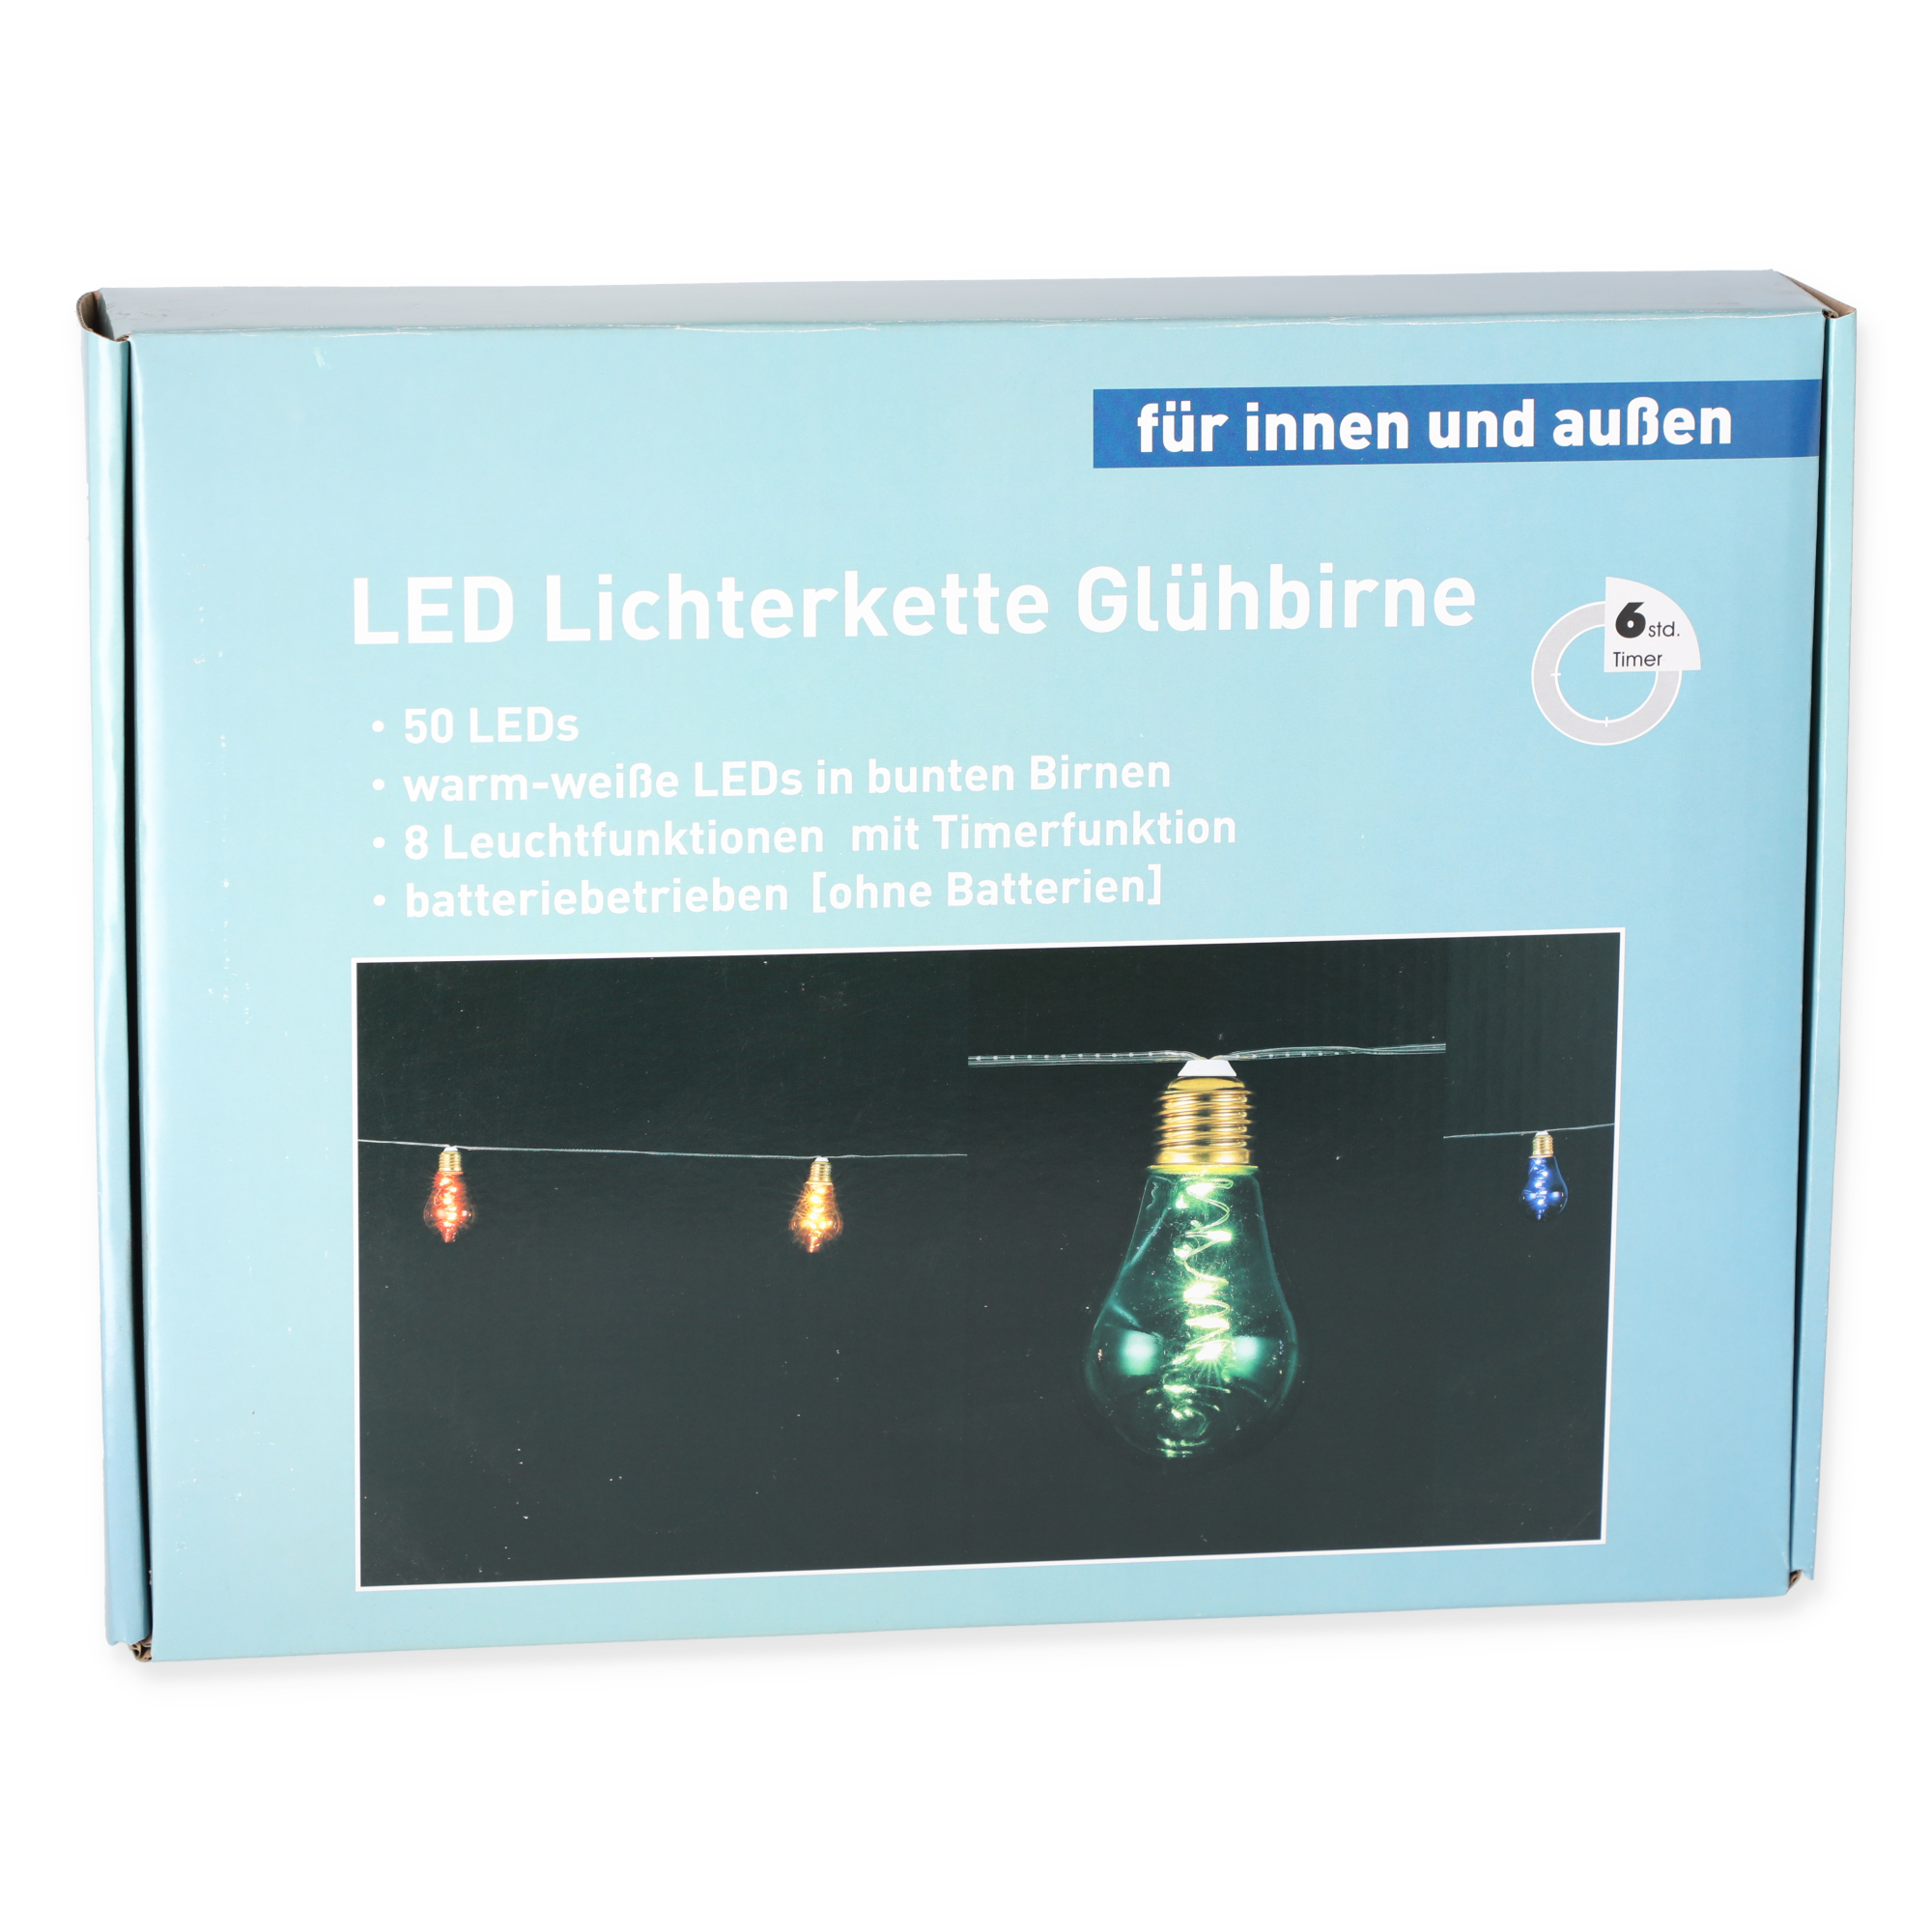 LED-Lichterkette 50 LEDs bunt 360 cm + product picture